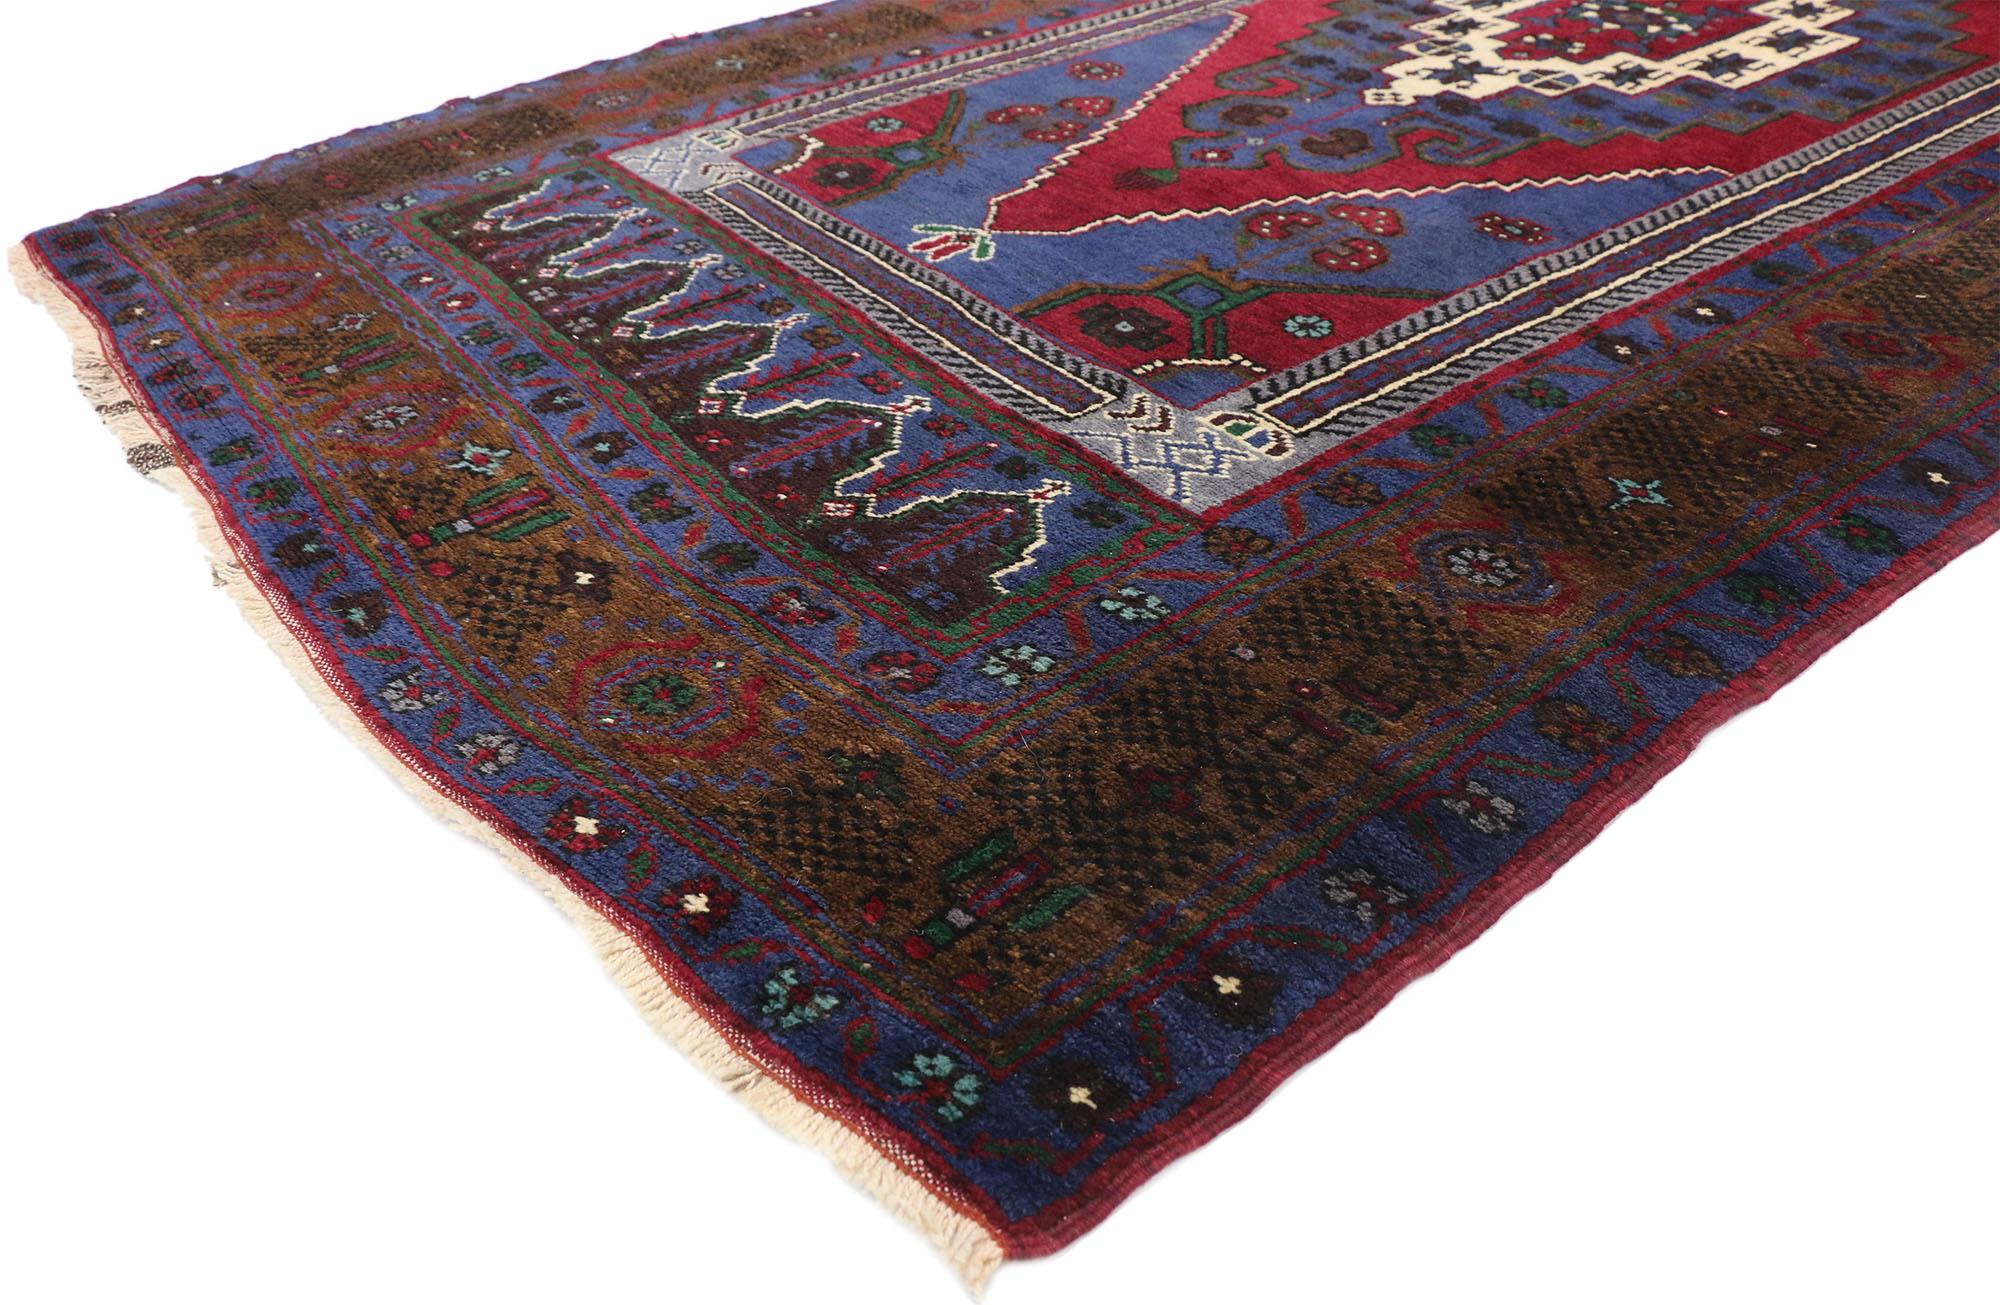 77226 Vieux tapis turc Konya Taspinar de style Renaissance vénitienne. Avec ses riches détails, ses couleurs vibrantes et sa symétrie, ce tapis turc vintage Konya Taspinar en laine nouée à la main incarne à merveille le style Renaissance vénitienne.